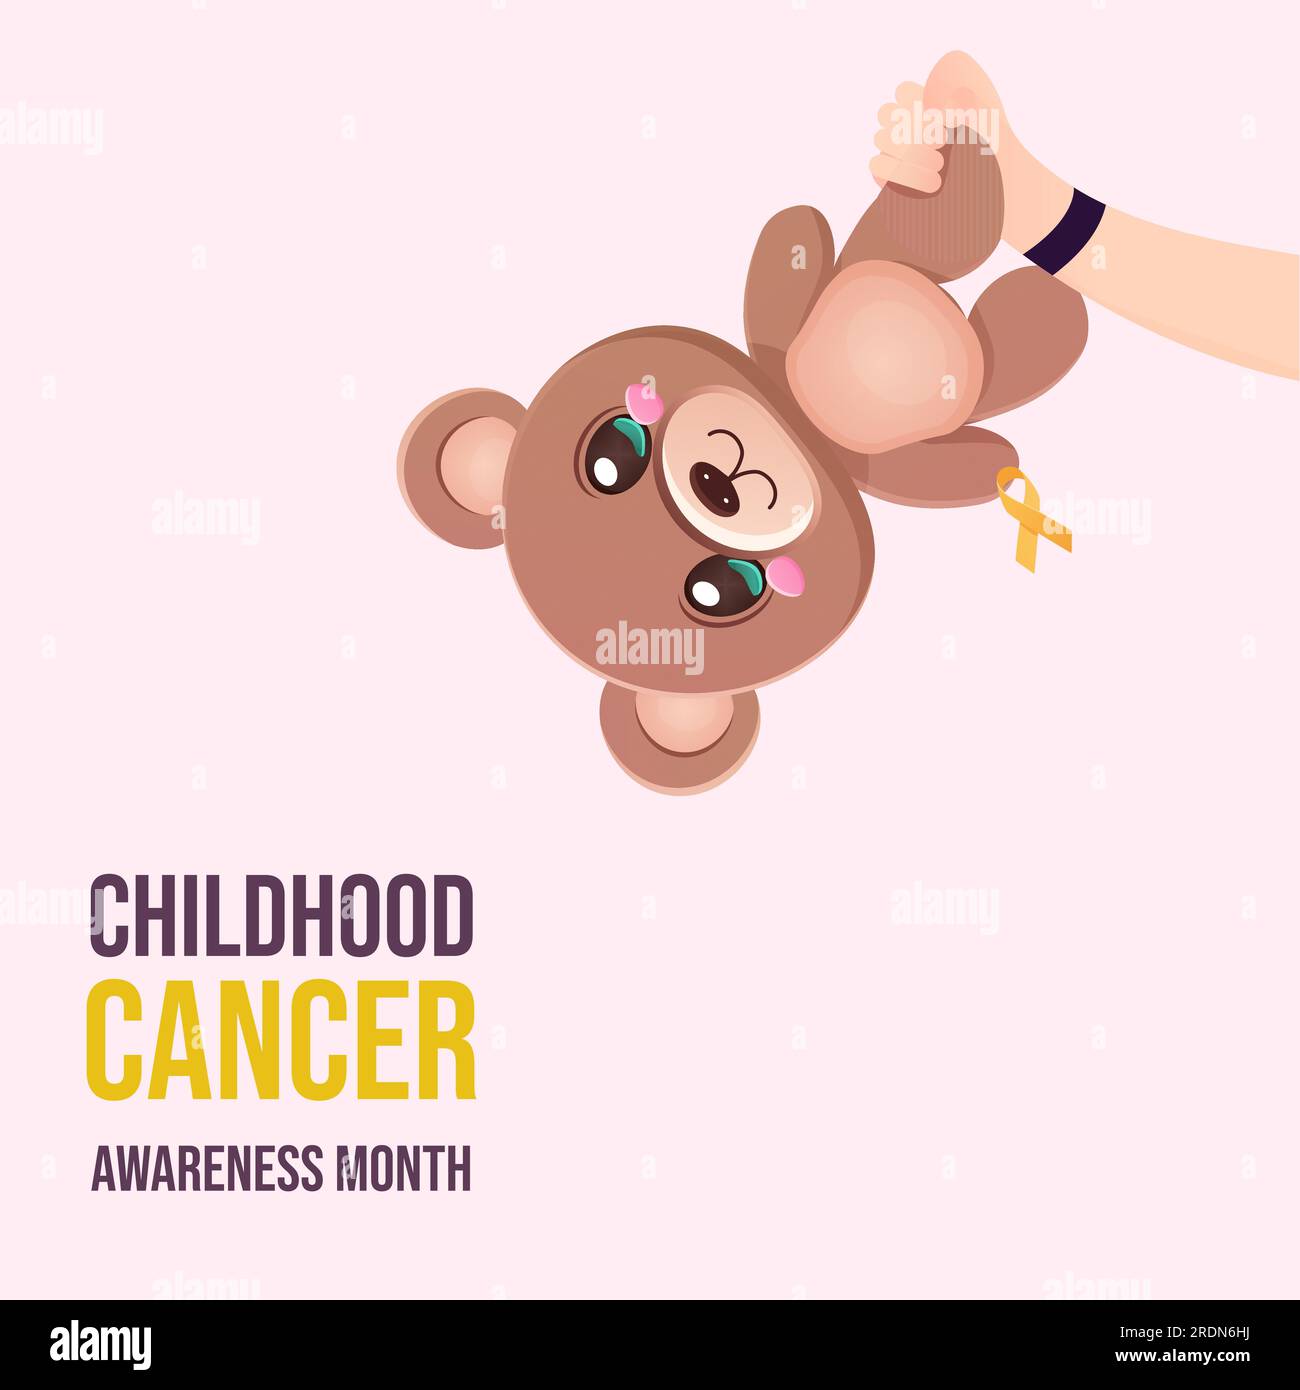 Internationaler Tag zur Bekämpfung von Krebserkrankungen im Kindesalter Monat Baby Hand Halten Bär Vektor Stock Vektor